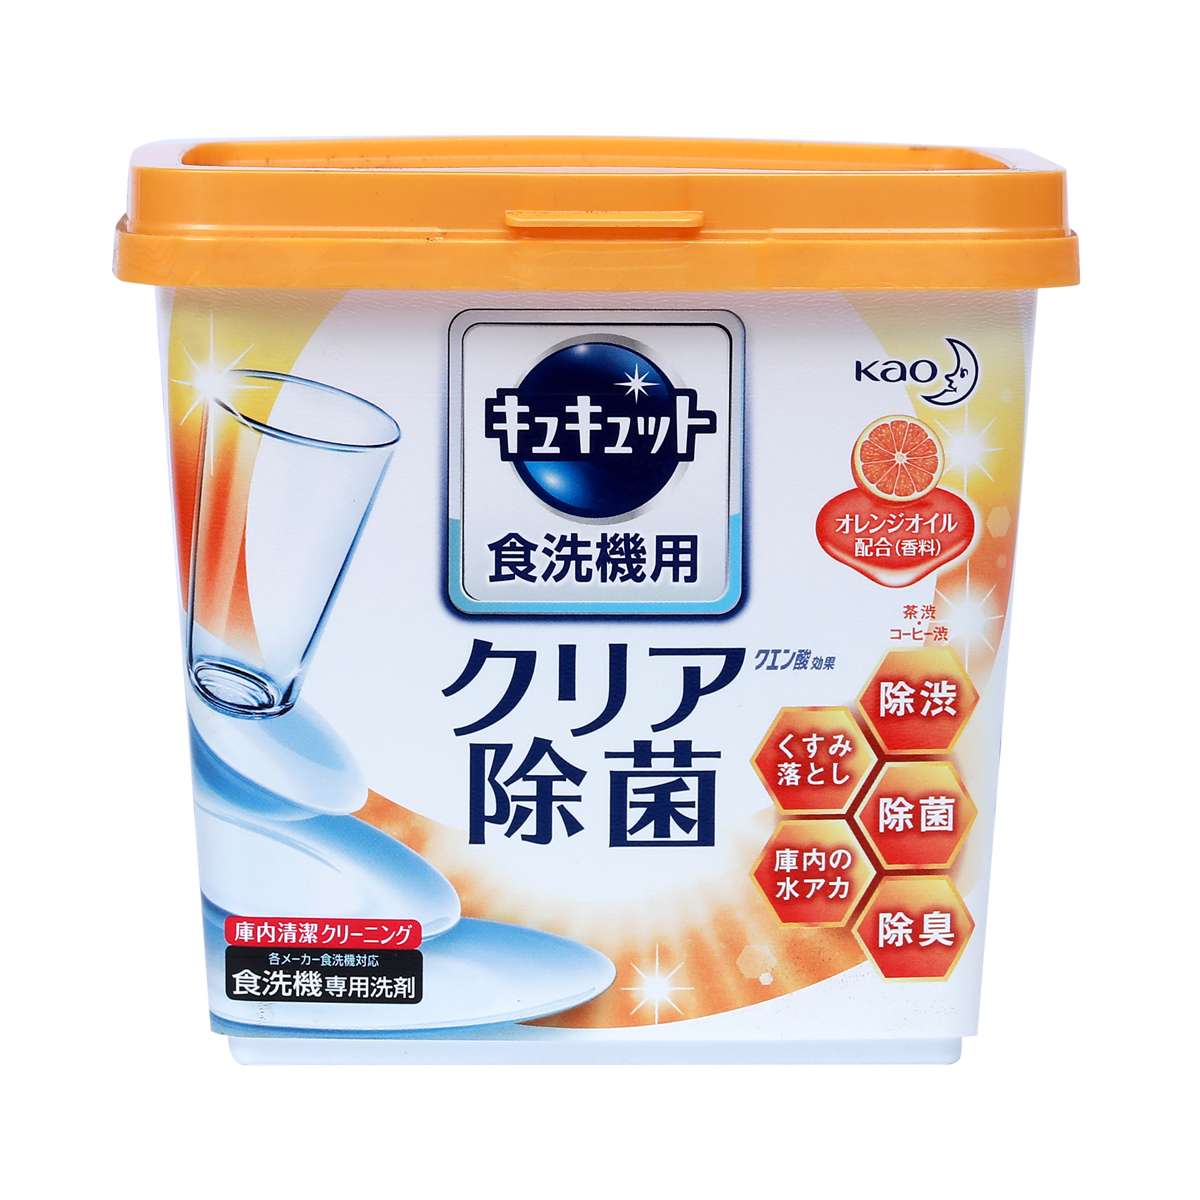 Bột rửa bát Kyukyuto chuyên dụng cho máy rửa chén bát 680g hương cam - made in Japan